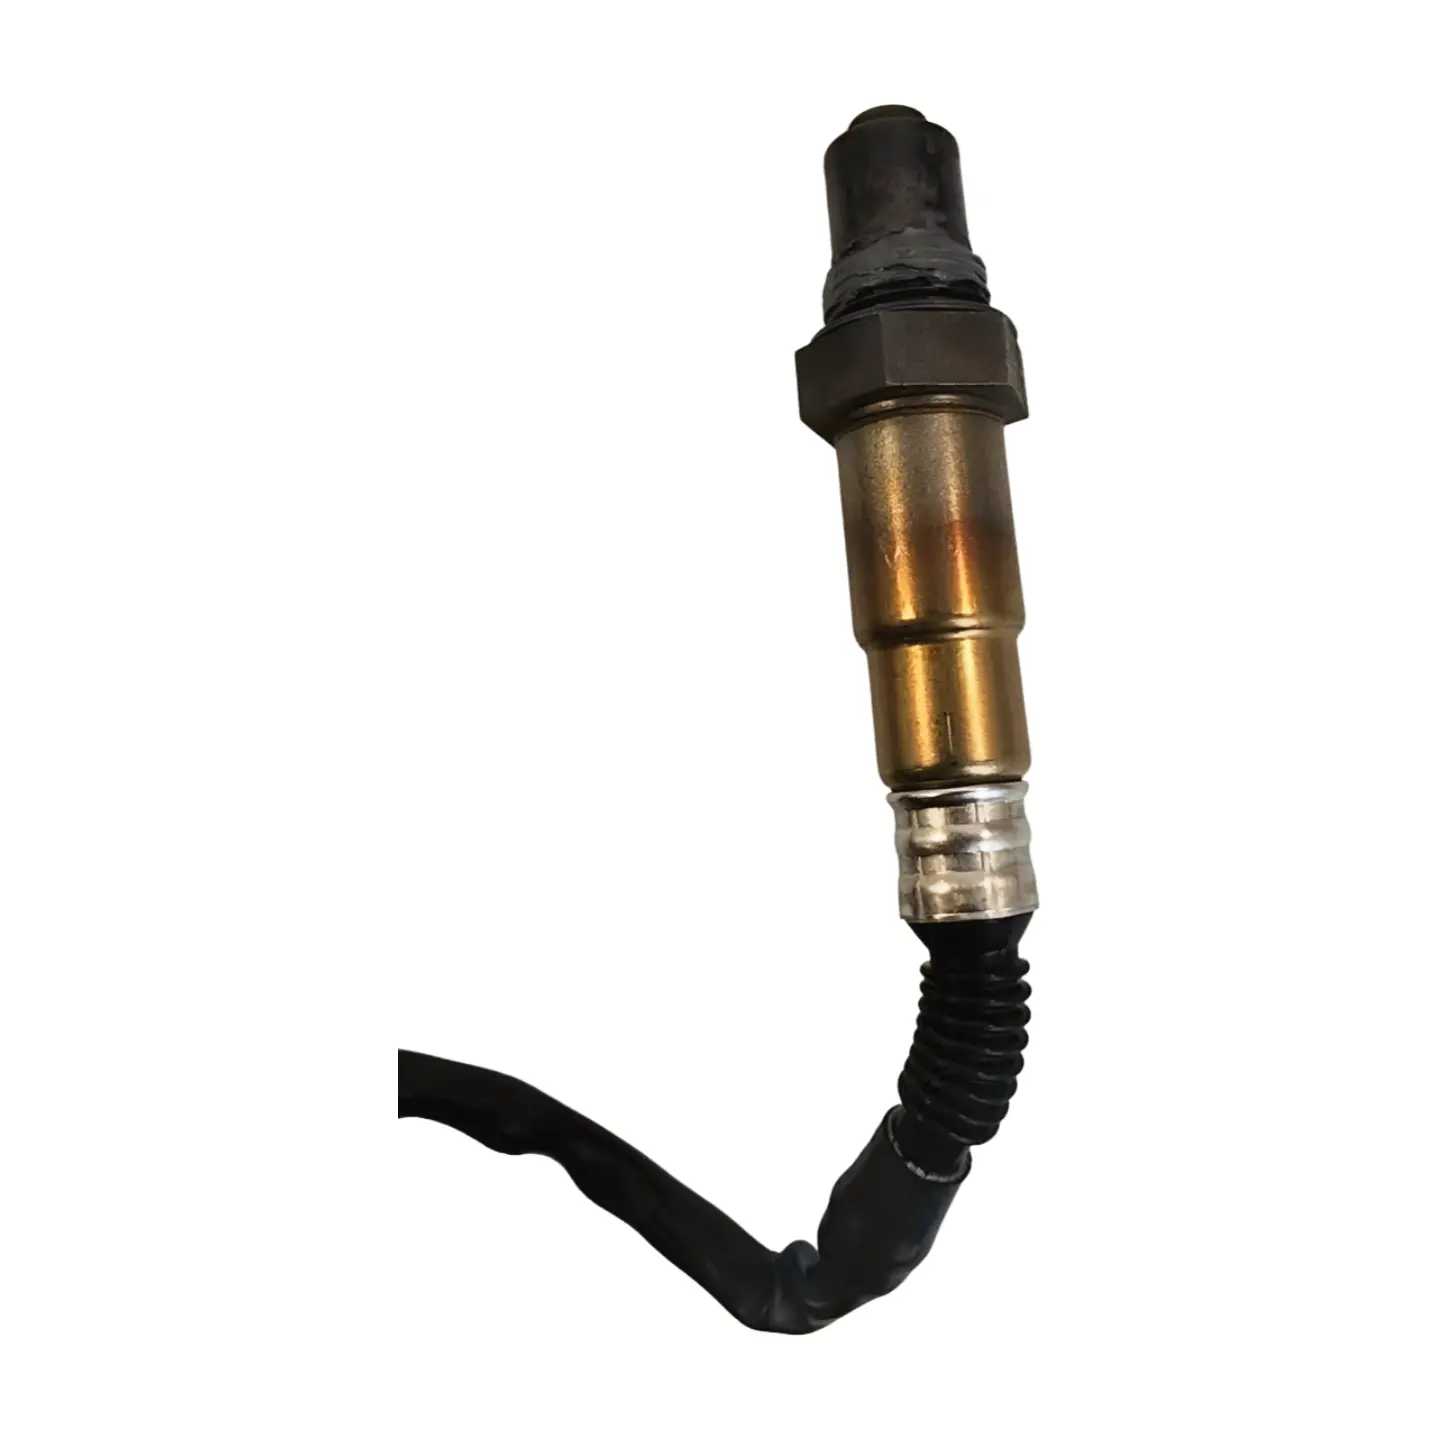 Hot Selling Auto Sensor Parts Natural Gas Engine Rear Original Oxygen Sensor 1000330937